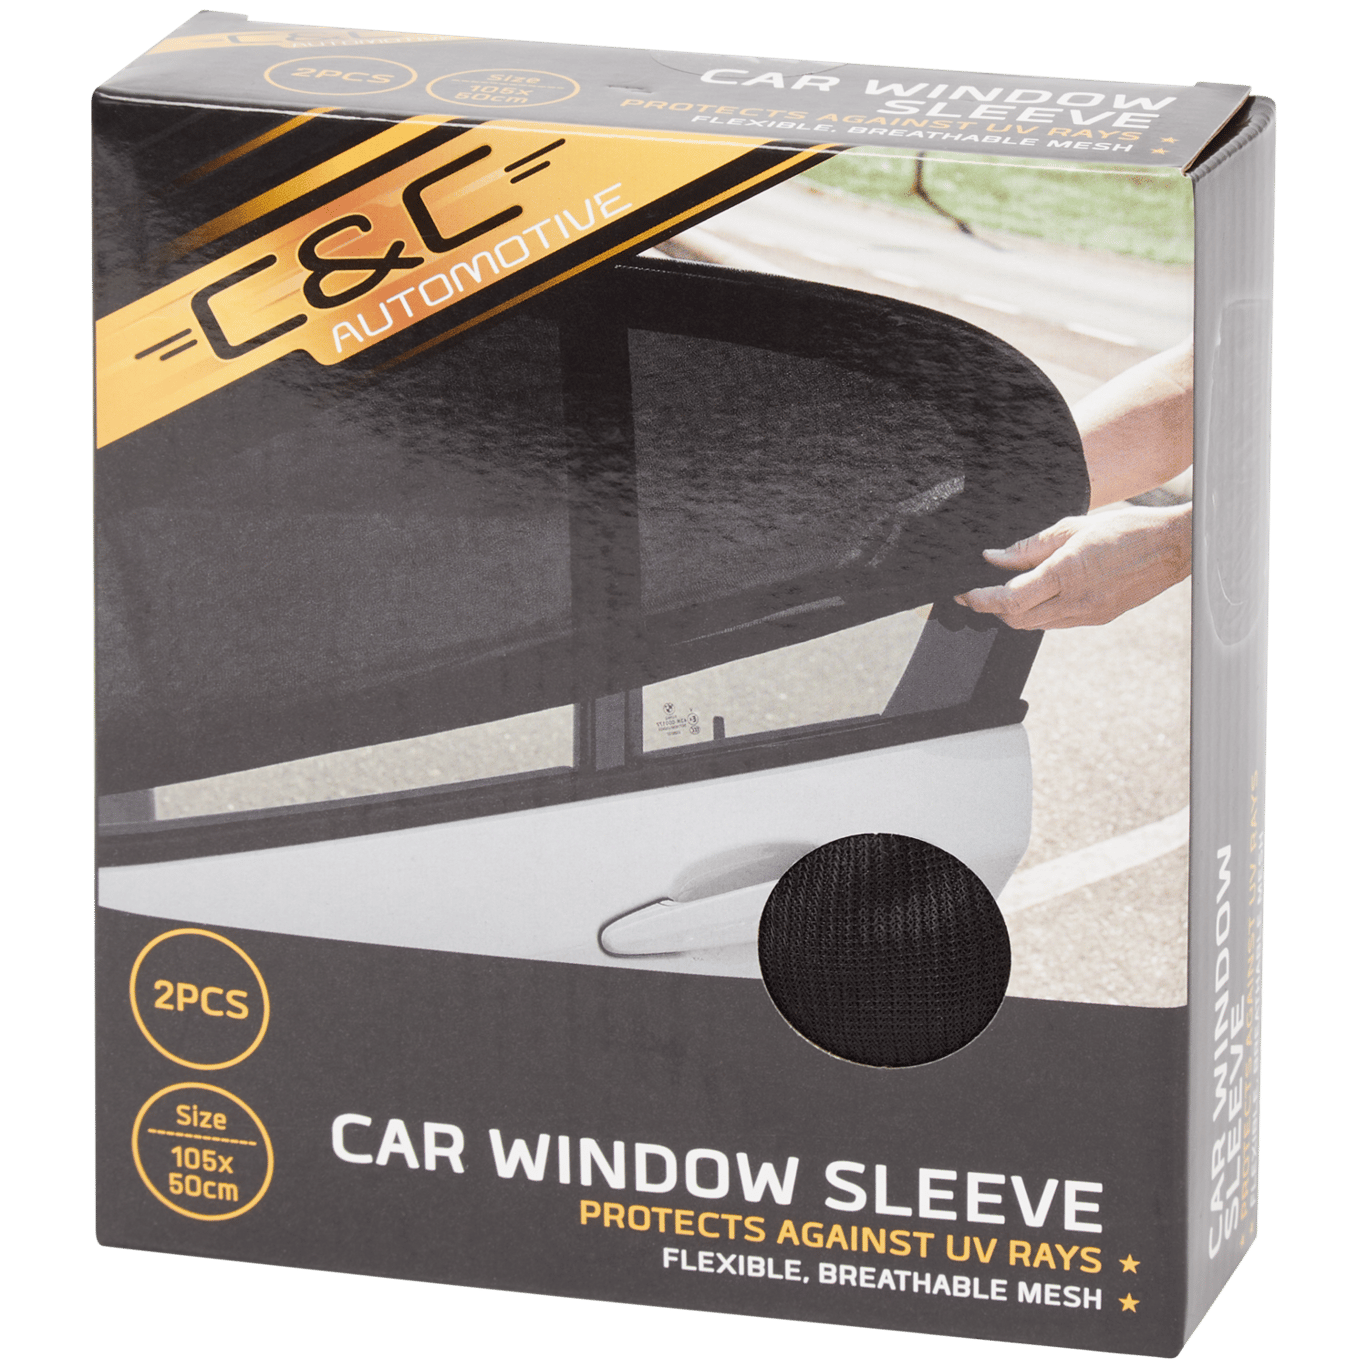 Parasole per finestrino auto C&C